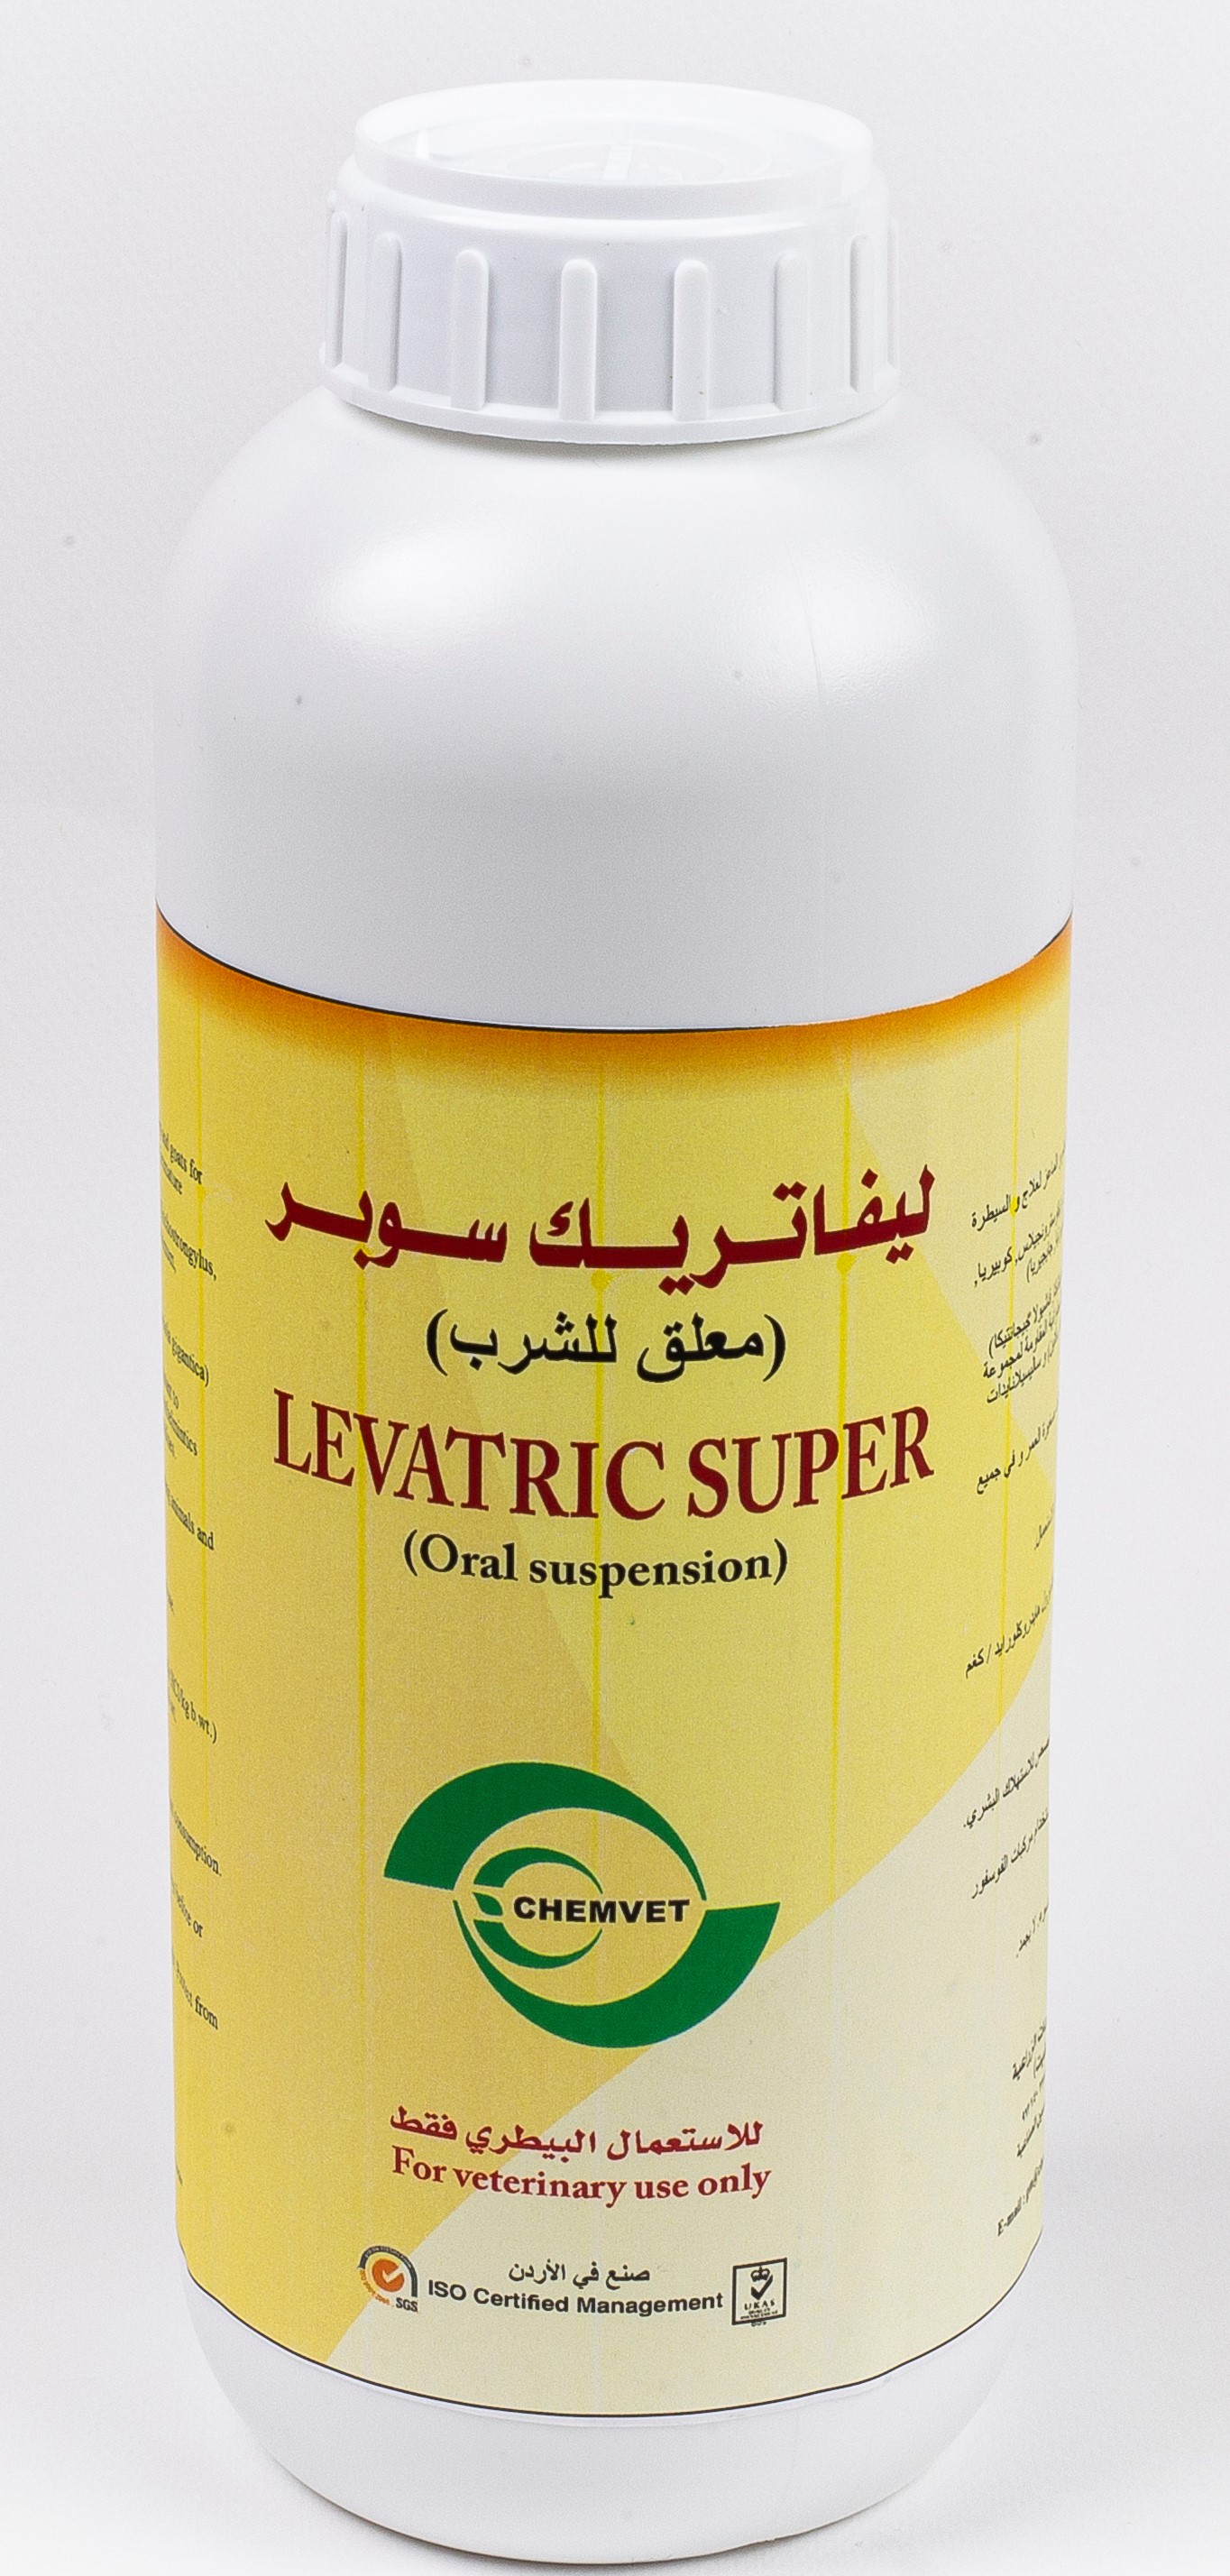 LEVATRIC SUPER